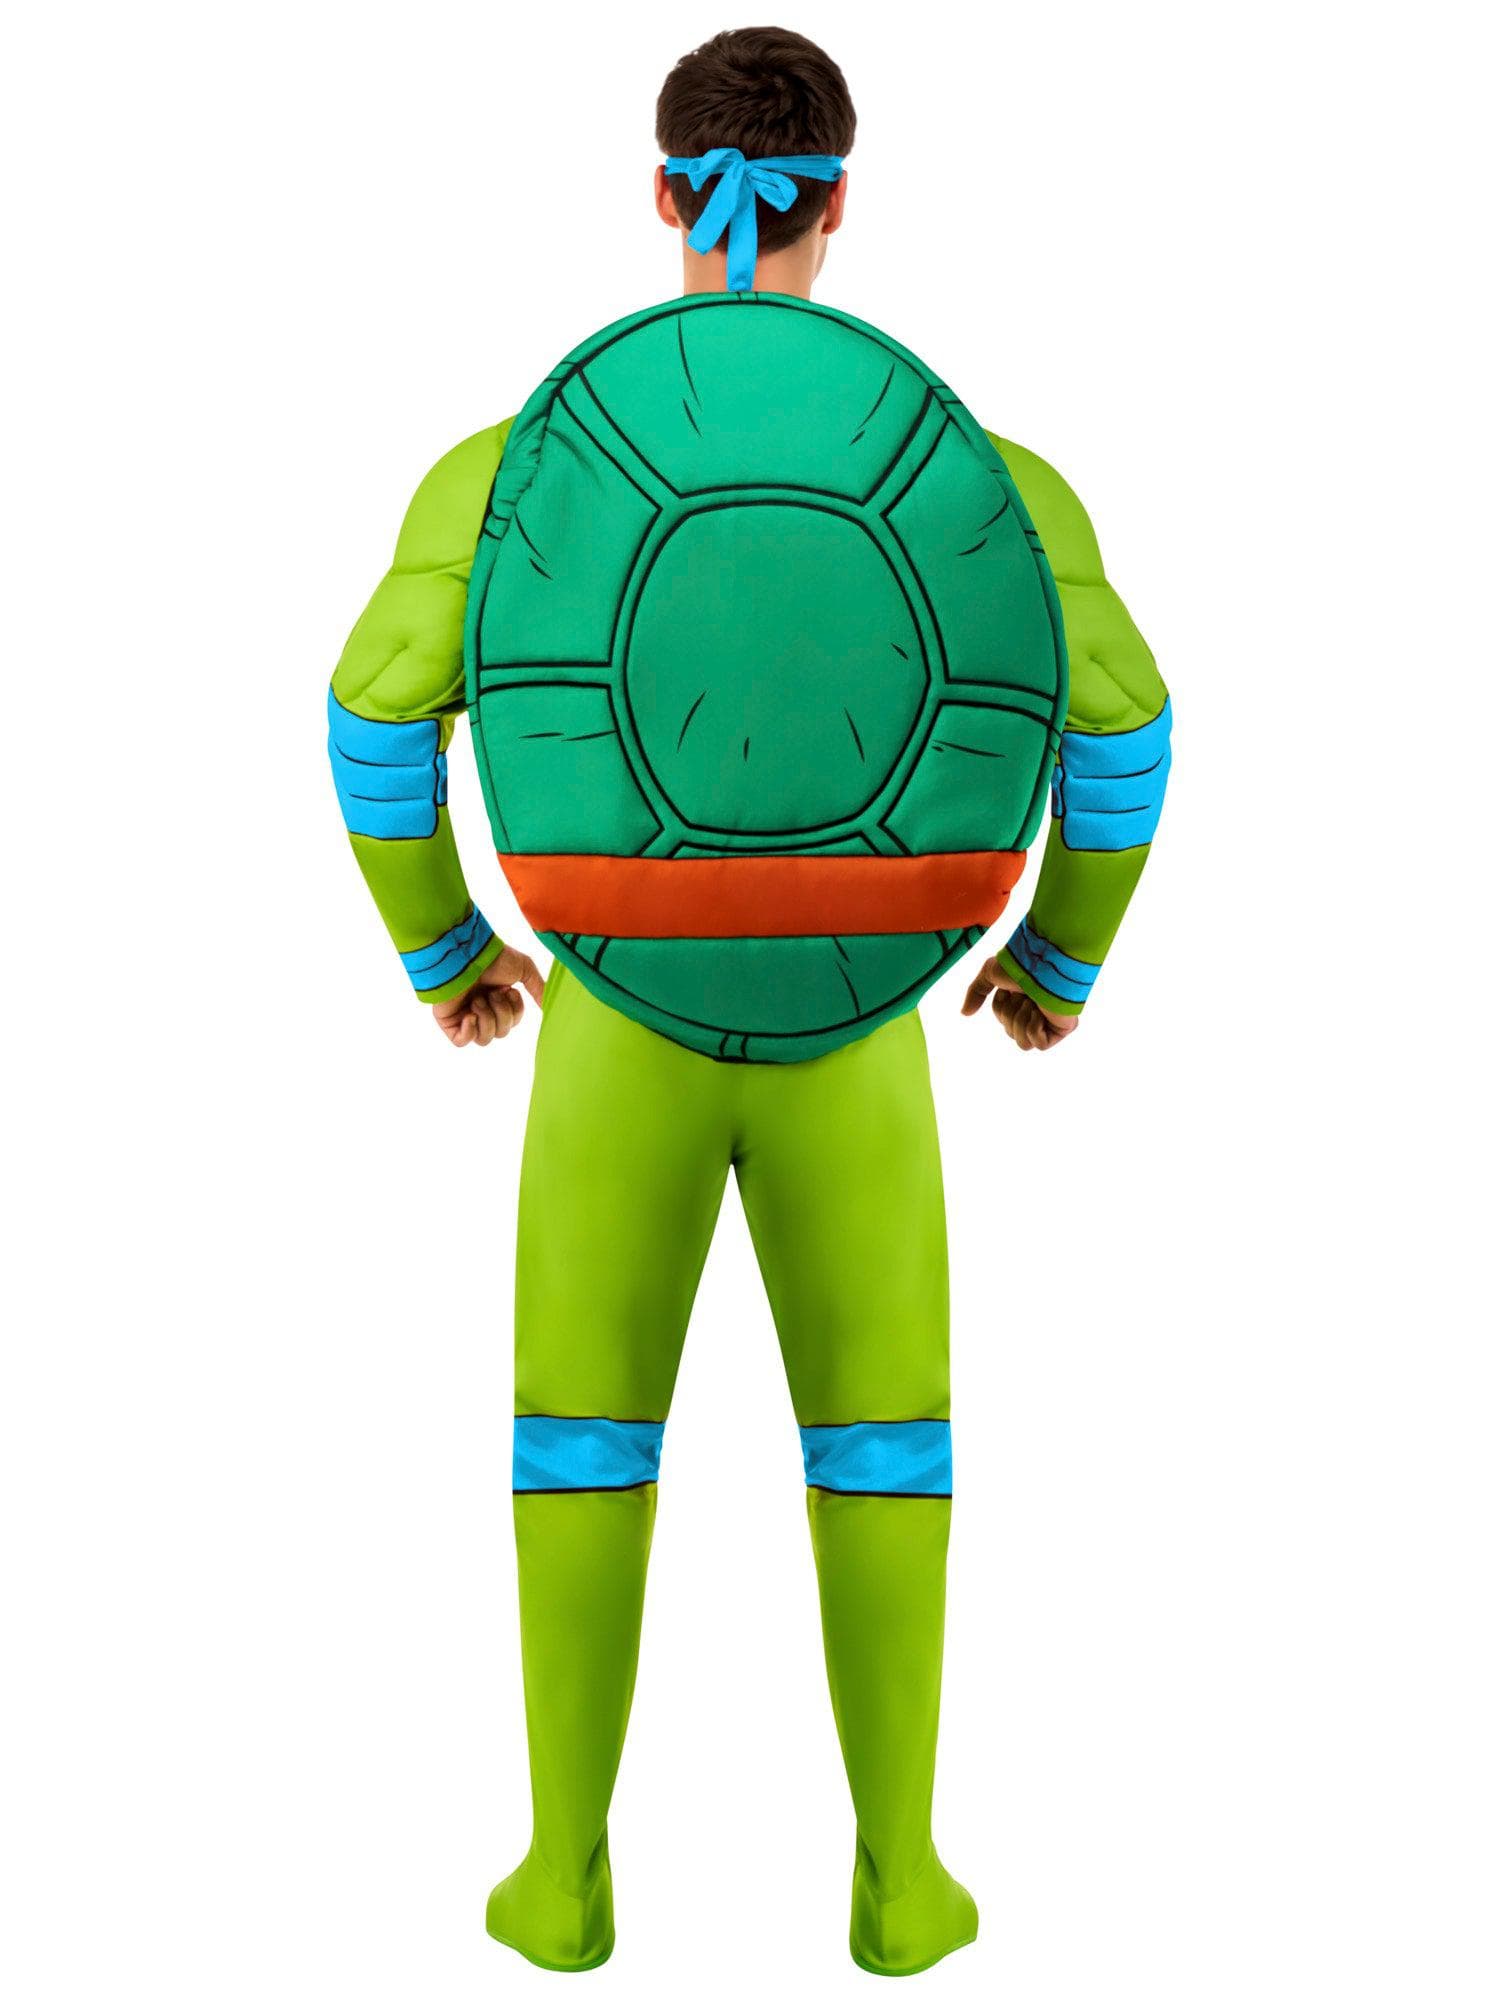 Teenage Mutant Ninja Turtles Deluxe Leonardo Adult Costume